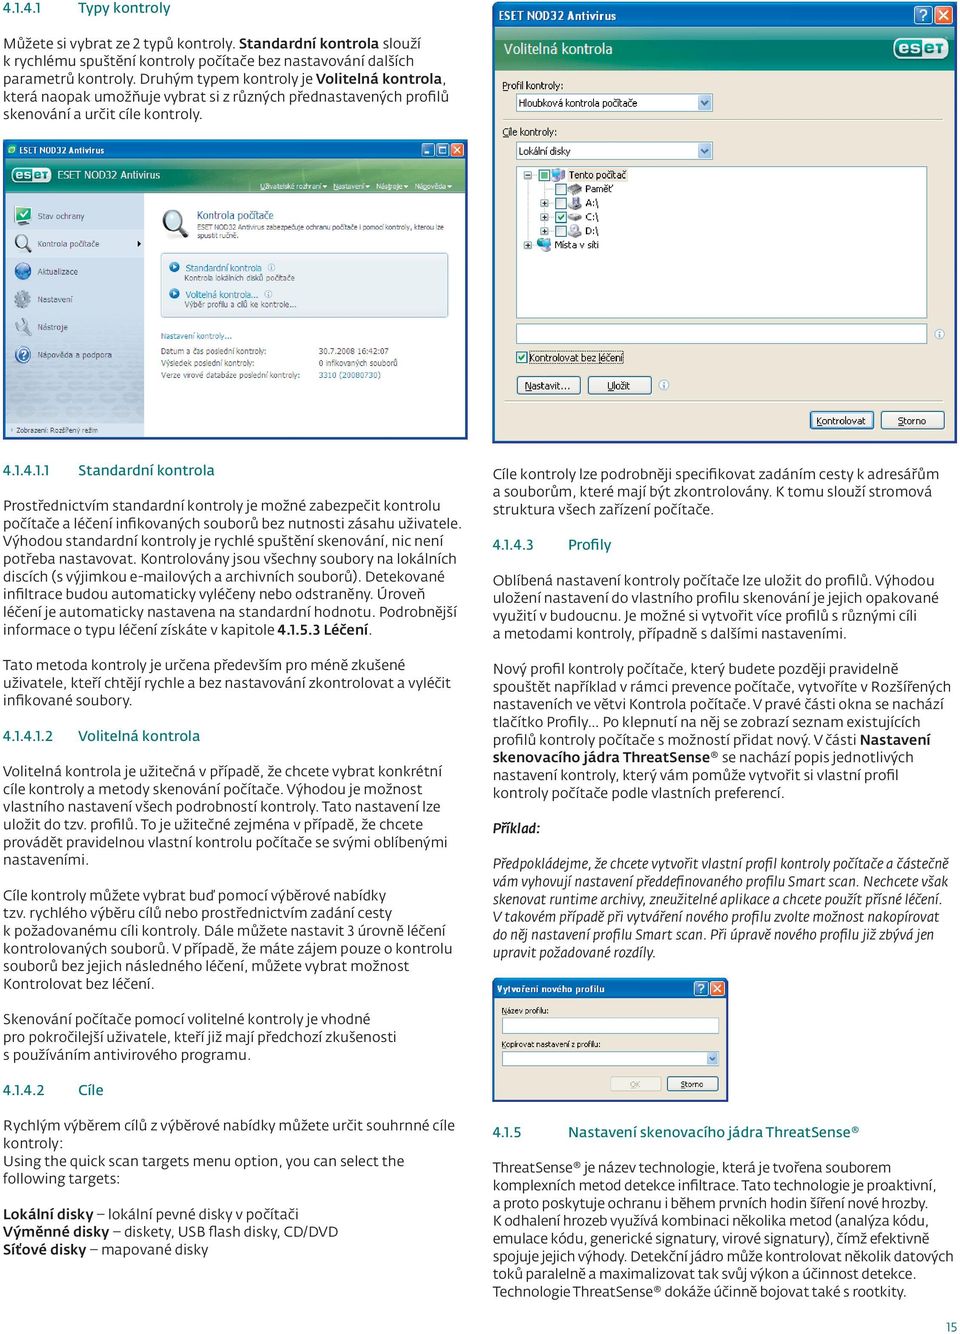 4.1.1 Standardní kontrola Prostřednictvím standardní kontroly je možné zabezpečit kontrolu počítače a léčení infikovaných souborů bez nutnosti zásahu uživatele.